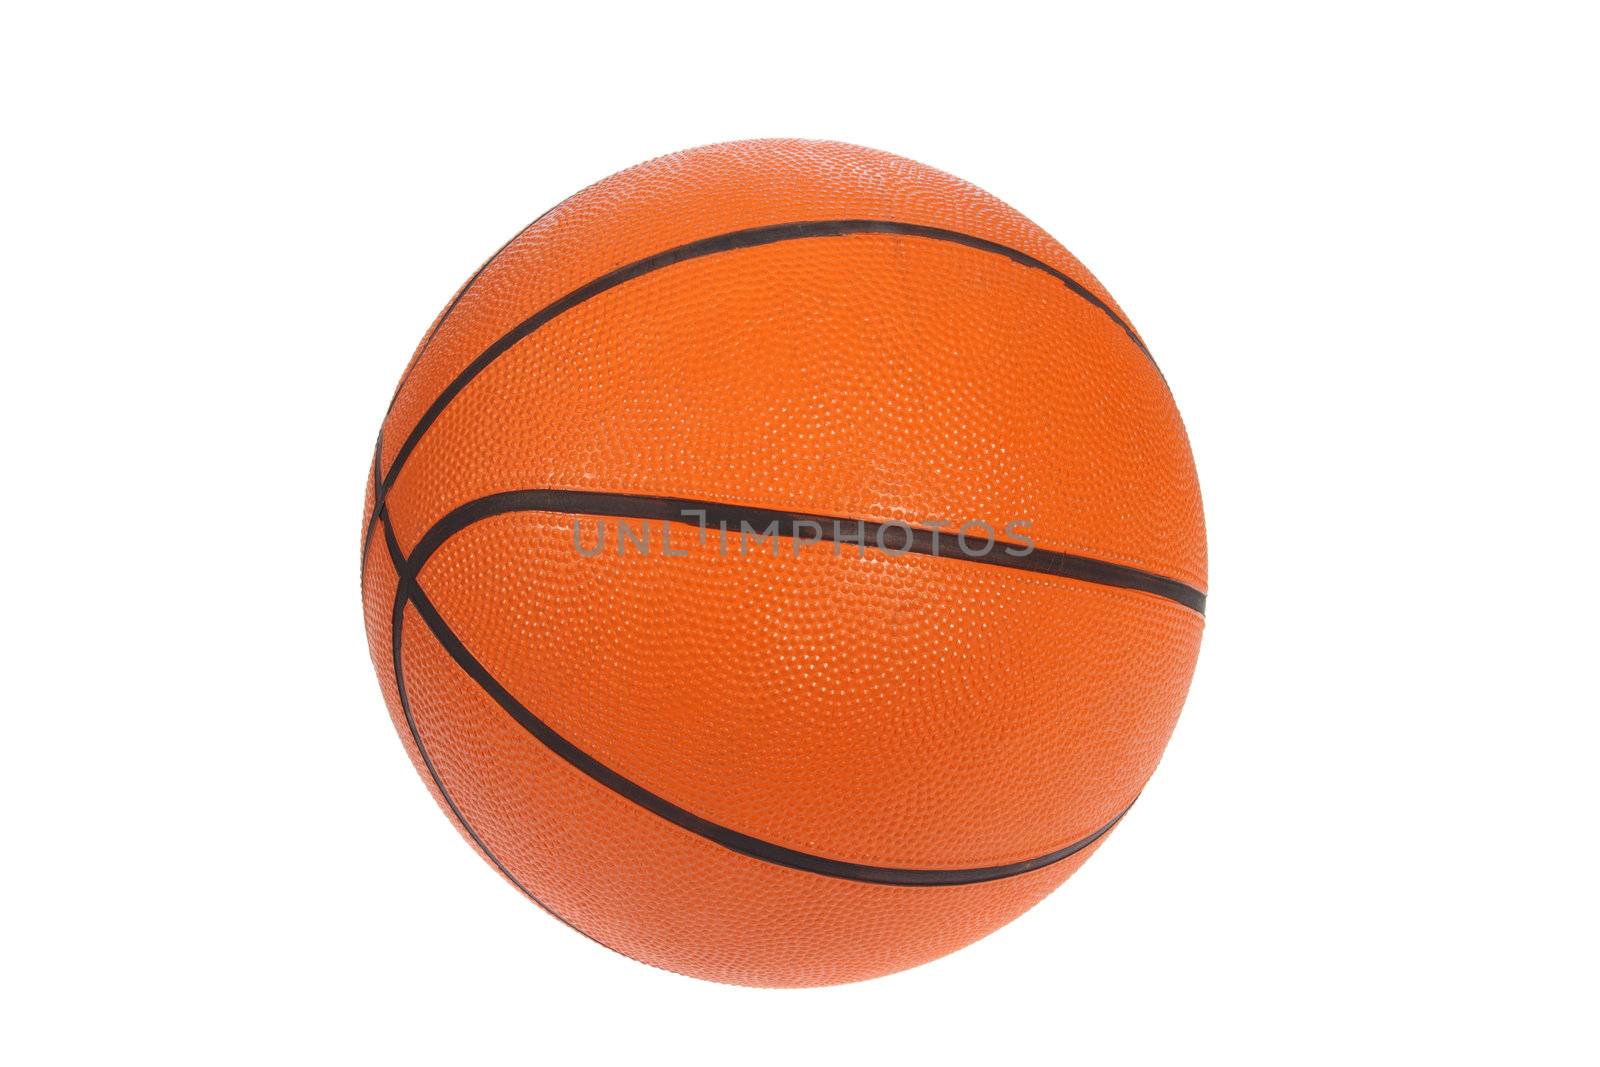 Orange basket bal, photo on the white background